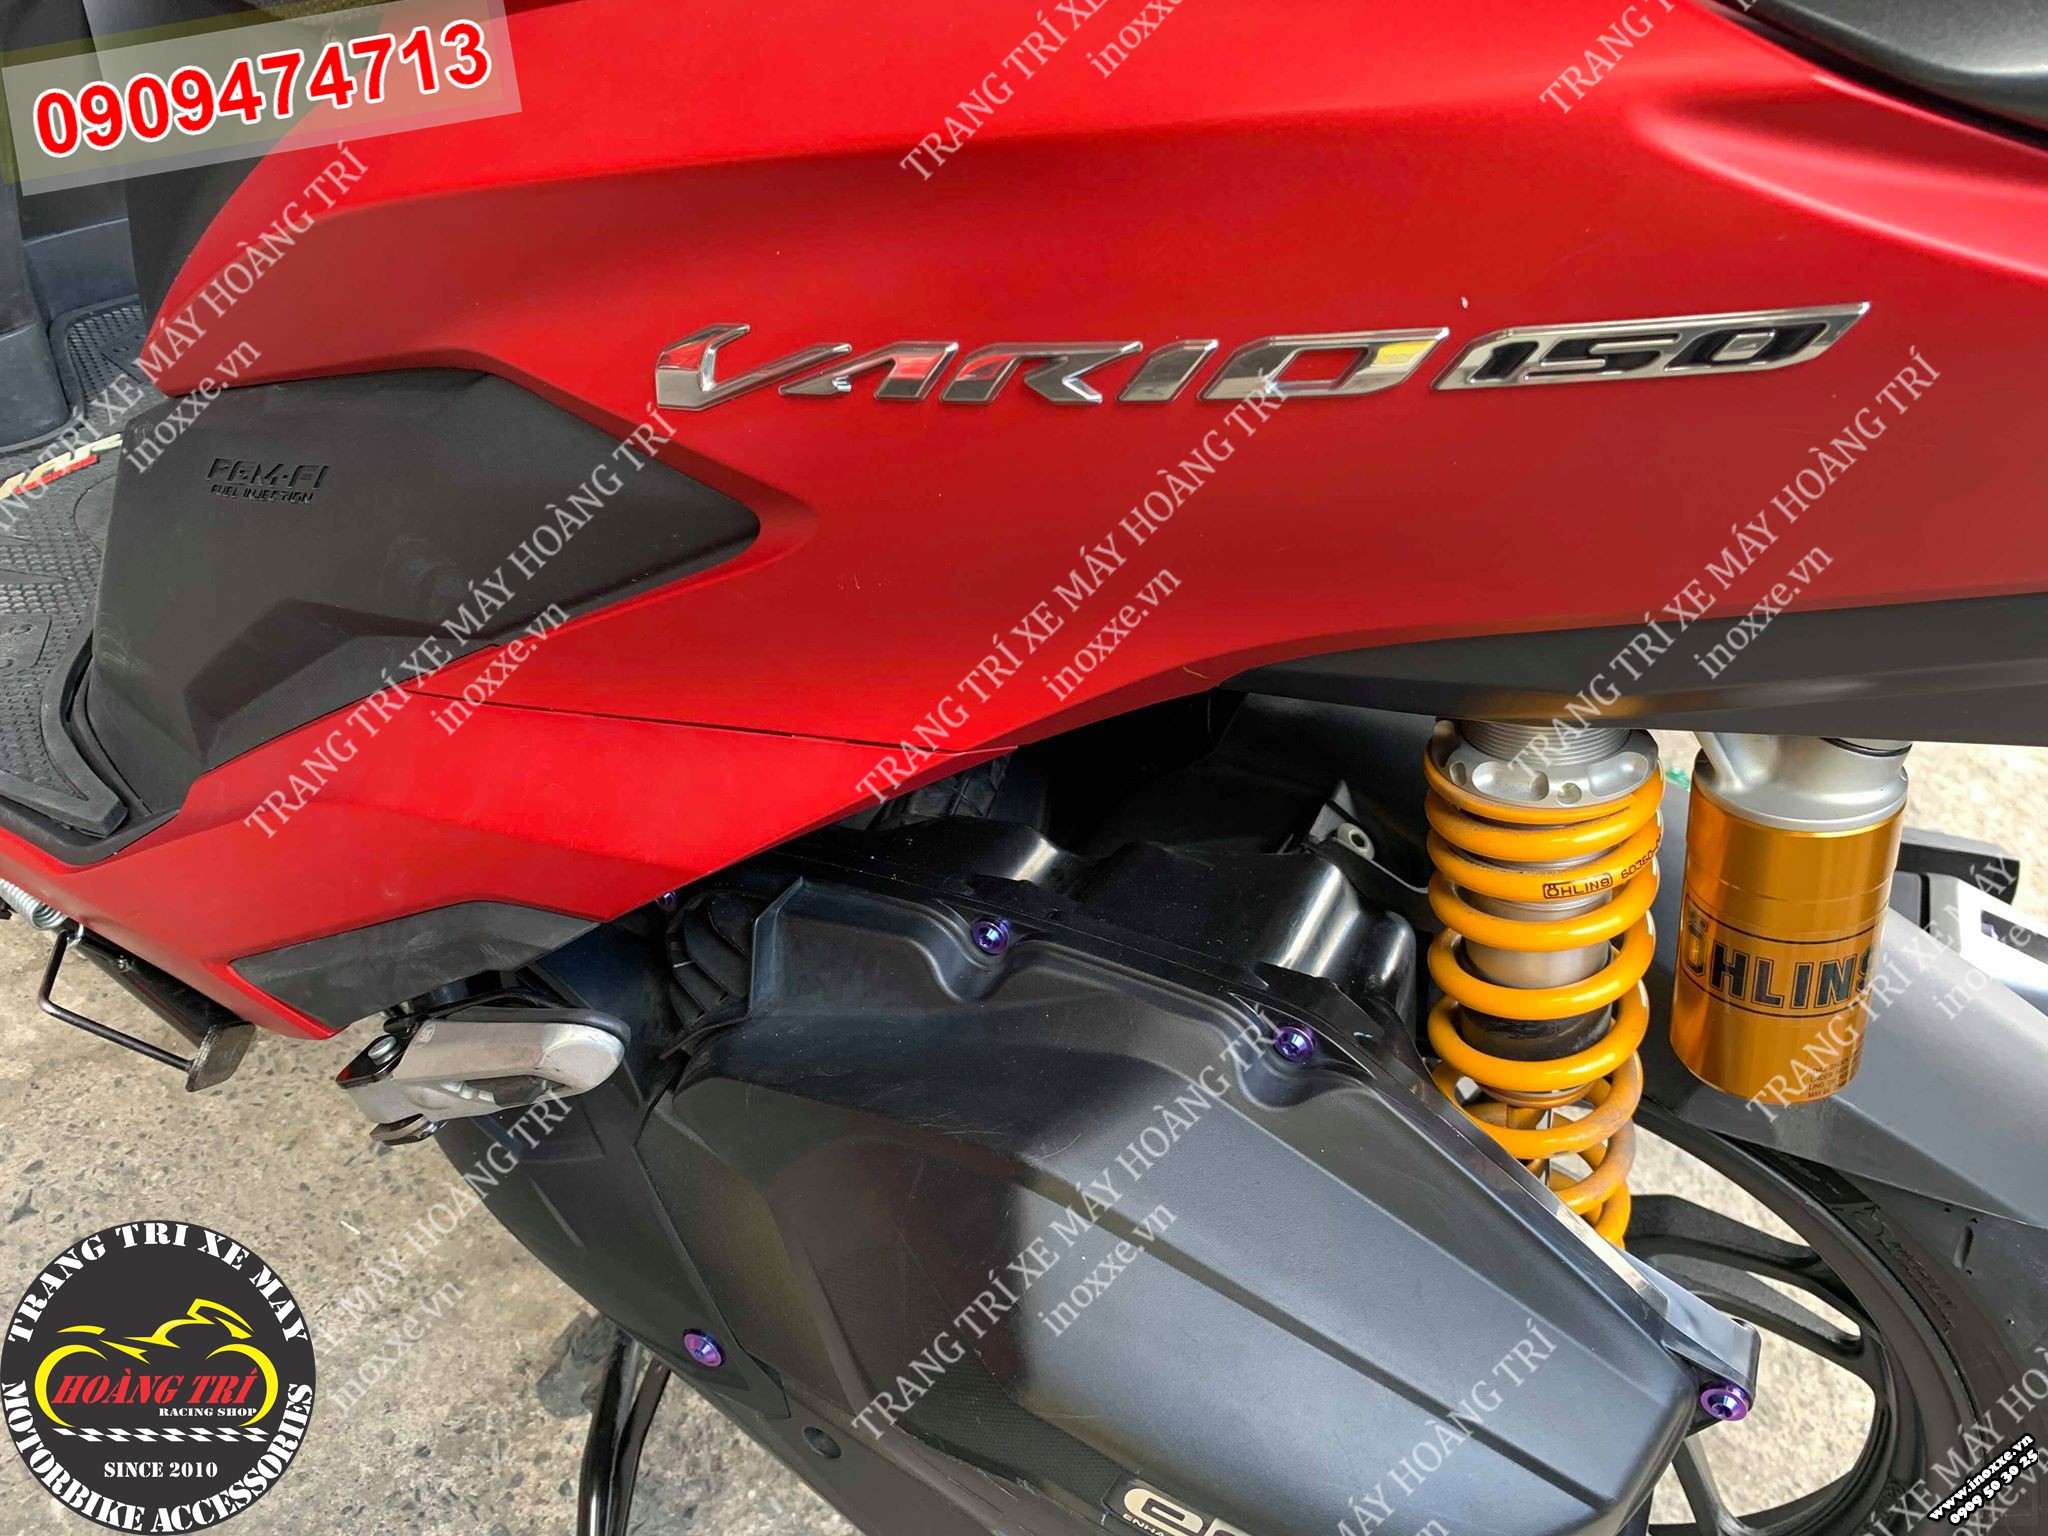 Gác chân Ducati lắp cho xe Vario - ảnh số 4